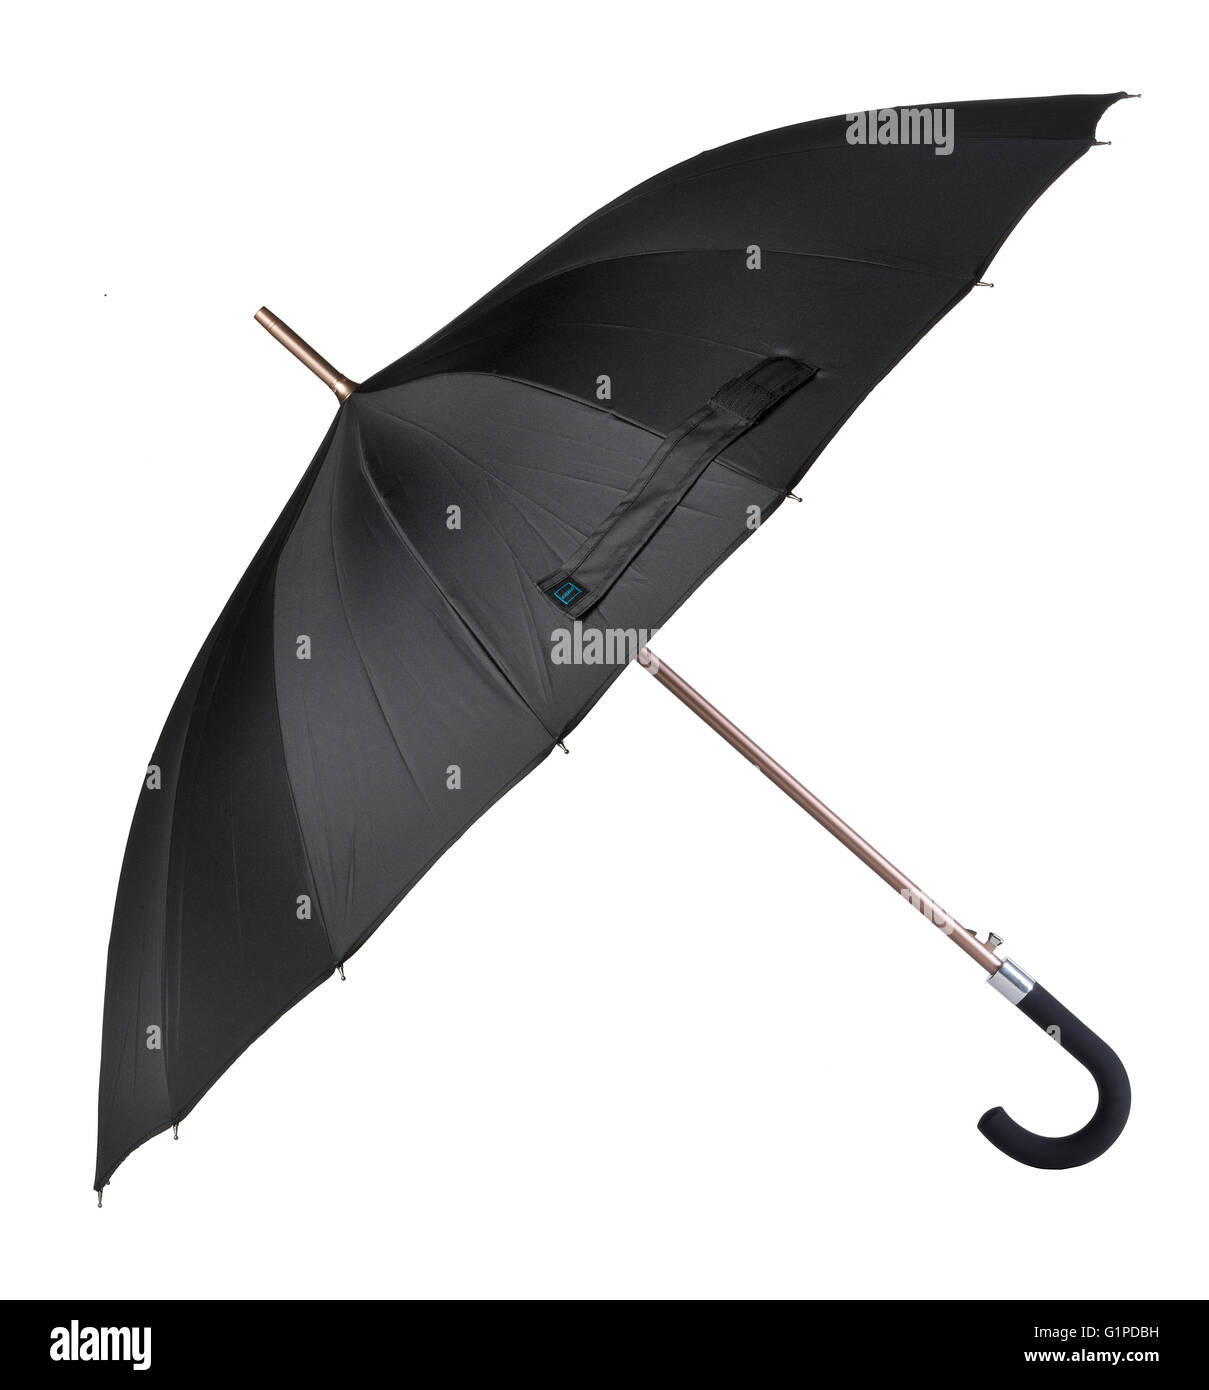 Parapluie Bluetooth. Losse jamais votre parapluie à nouveau avec cet appareil intelligent connecté à votre application mobile via Bluetooth. Banque D'Images